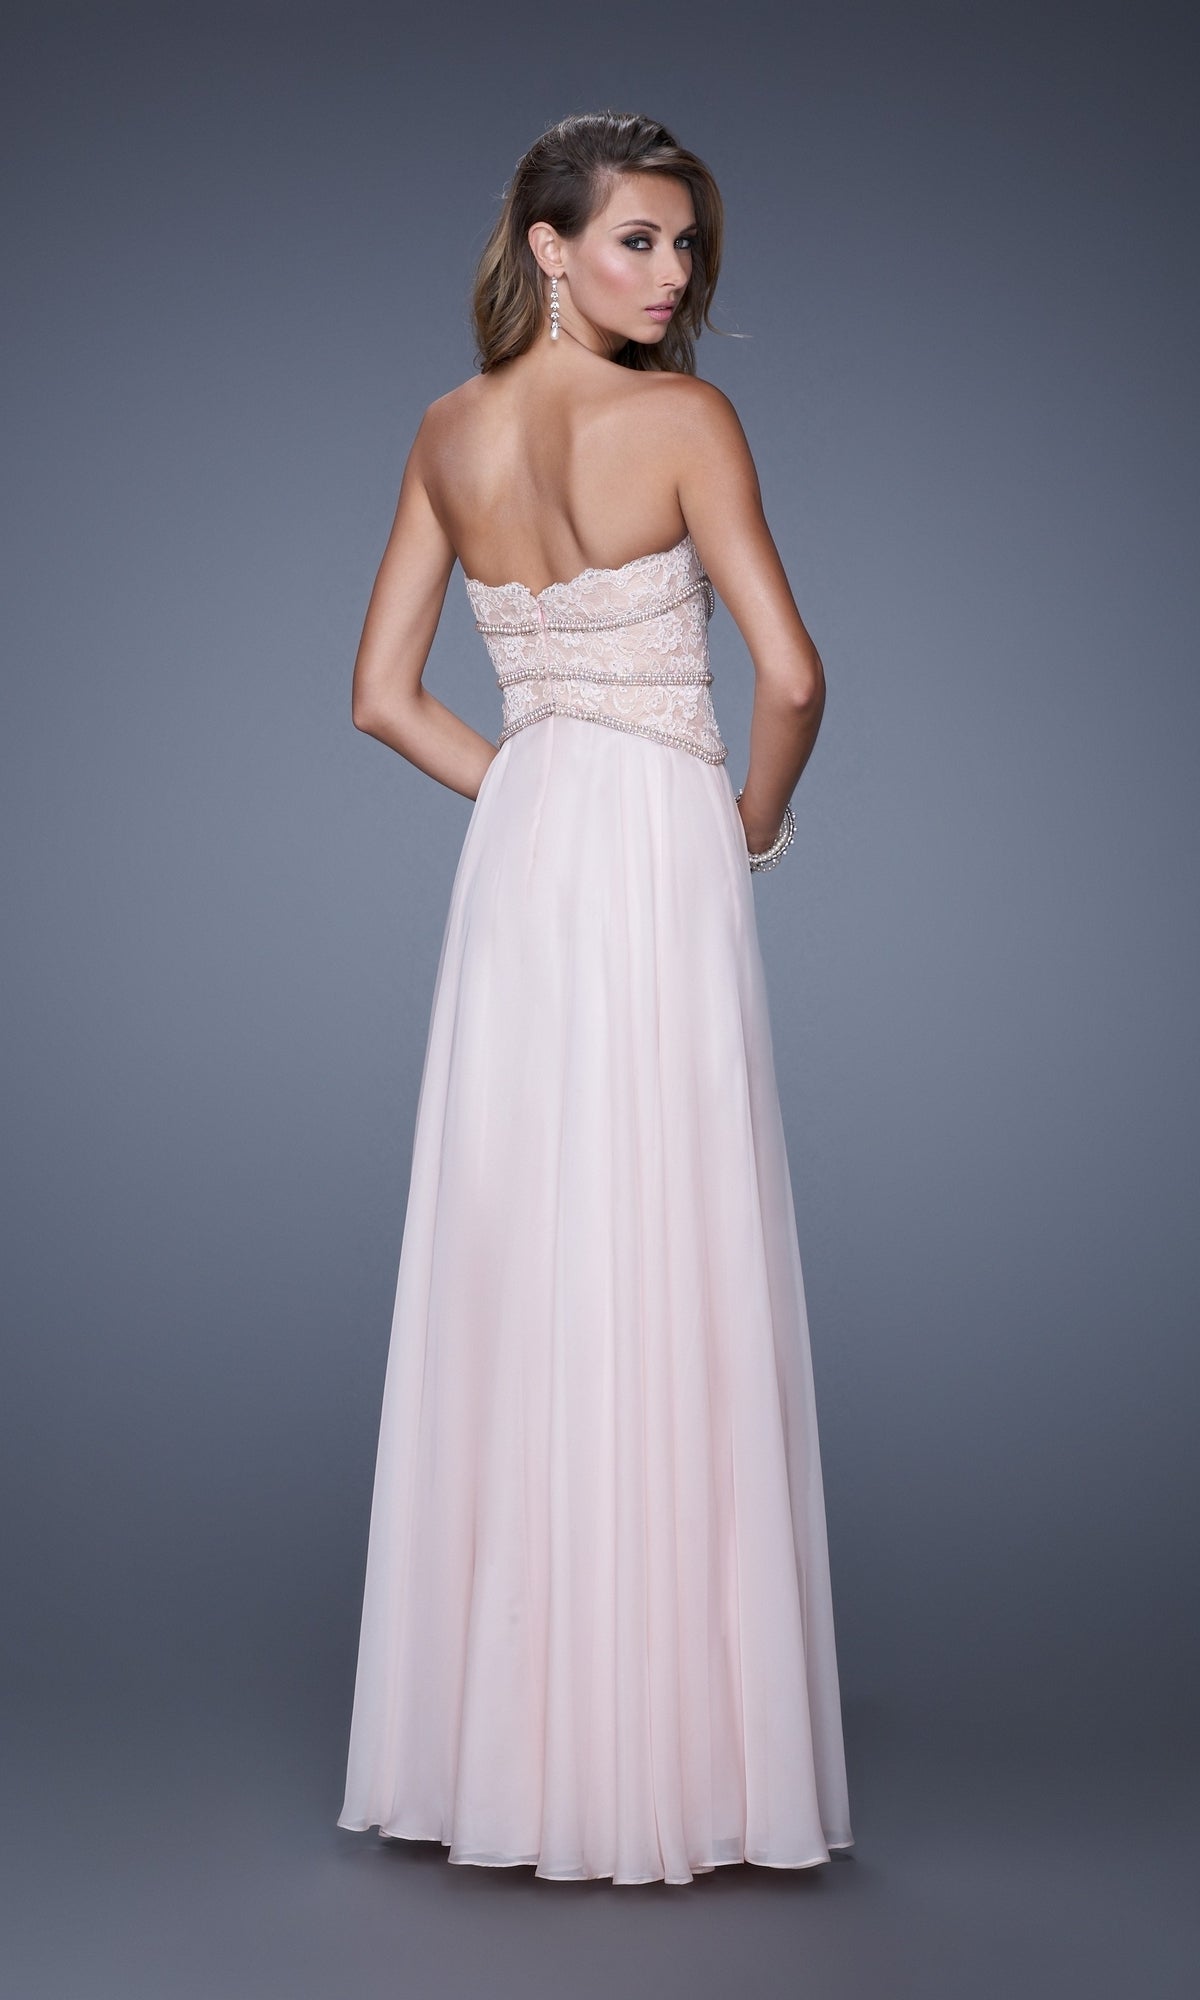 Lace-Bodice La Femme Chiffon Prom Dress 20743